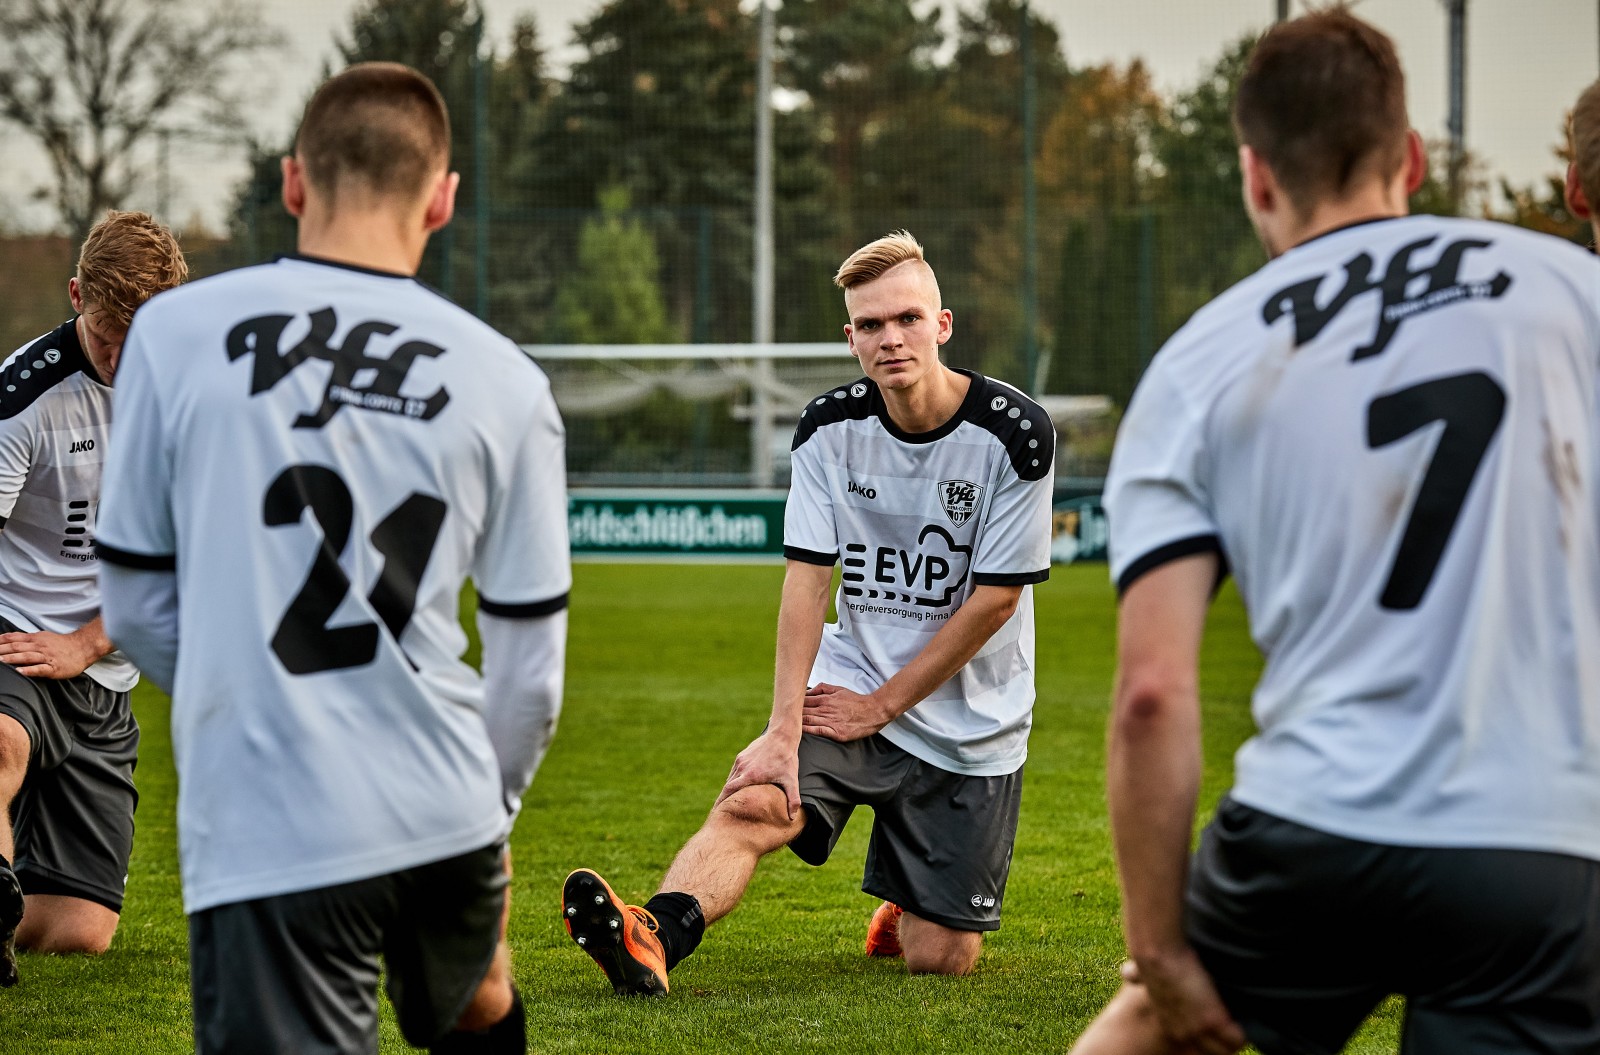 Nach dem Spiel ist vor dem Spiel: Der VfL Pirna bereitet sich auf die nächste Aufgabe vor. Foto: Marko Förster